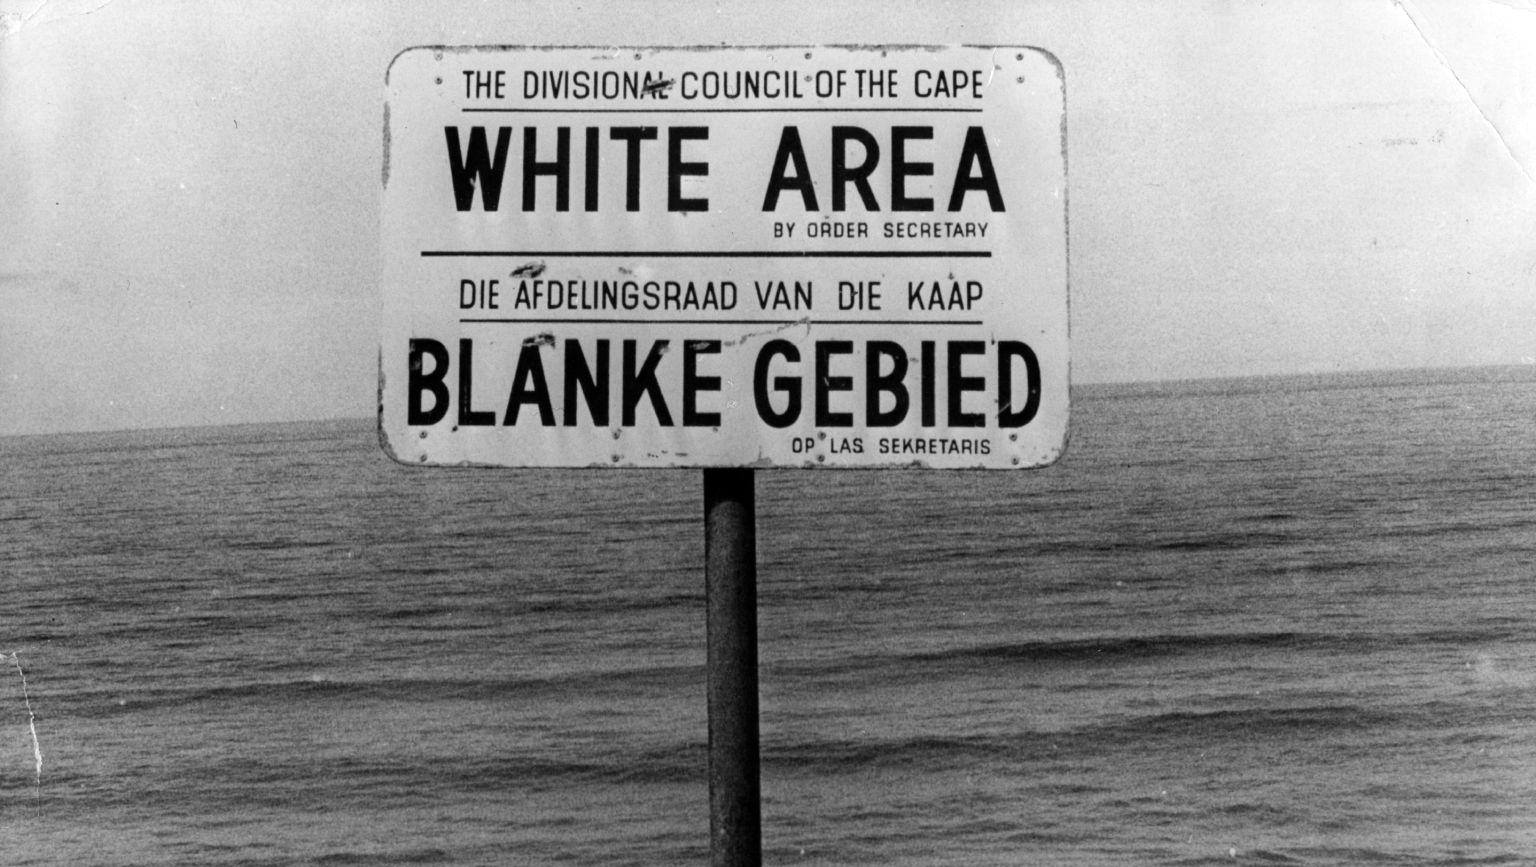 Placa à beira da praia na Cidade do Cabo - África do Sul (apartheid).